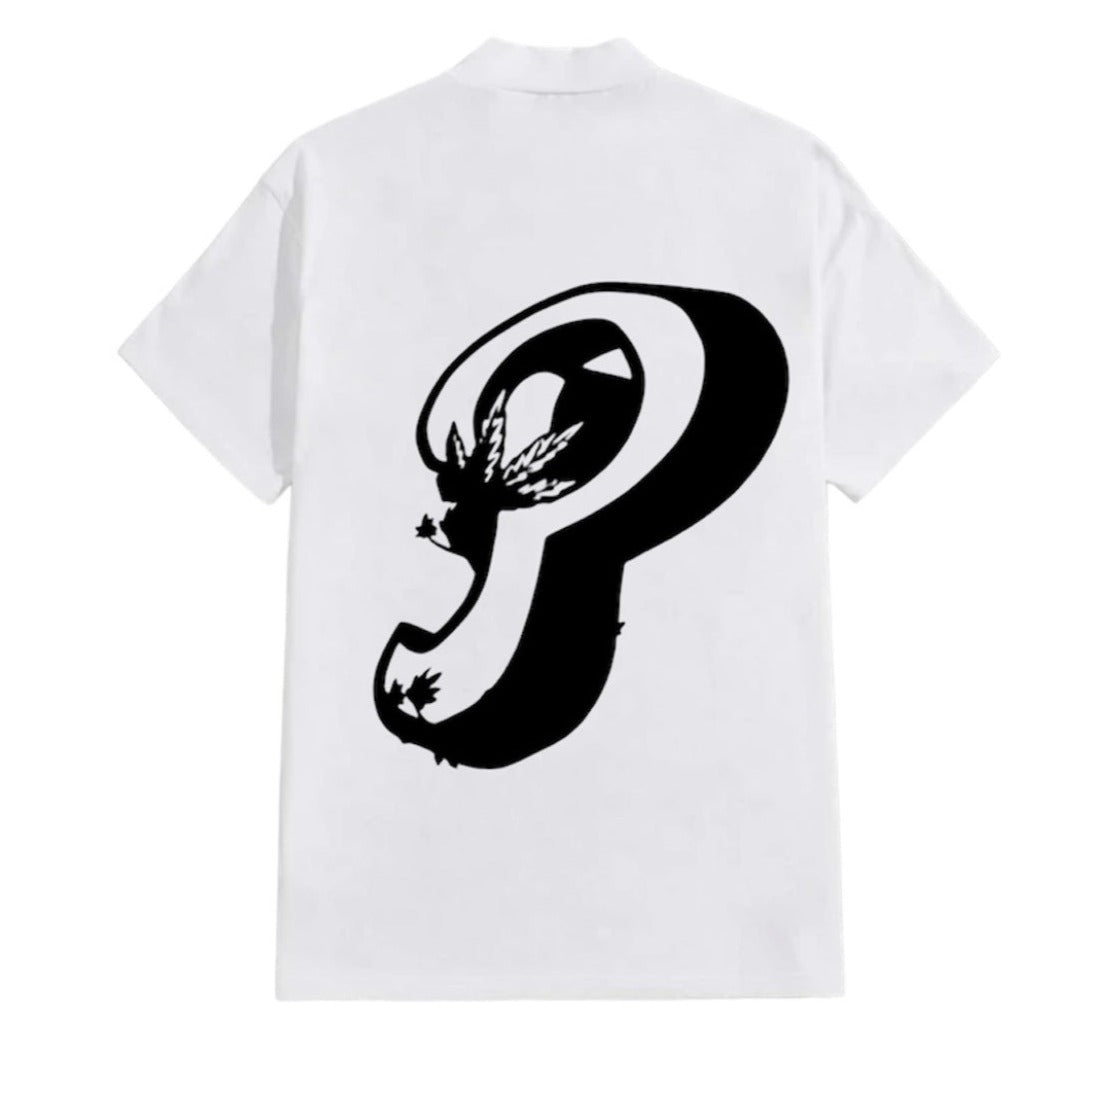 Plantique Classic T-Shirt - White/Black back